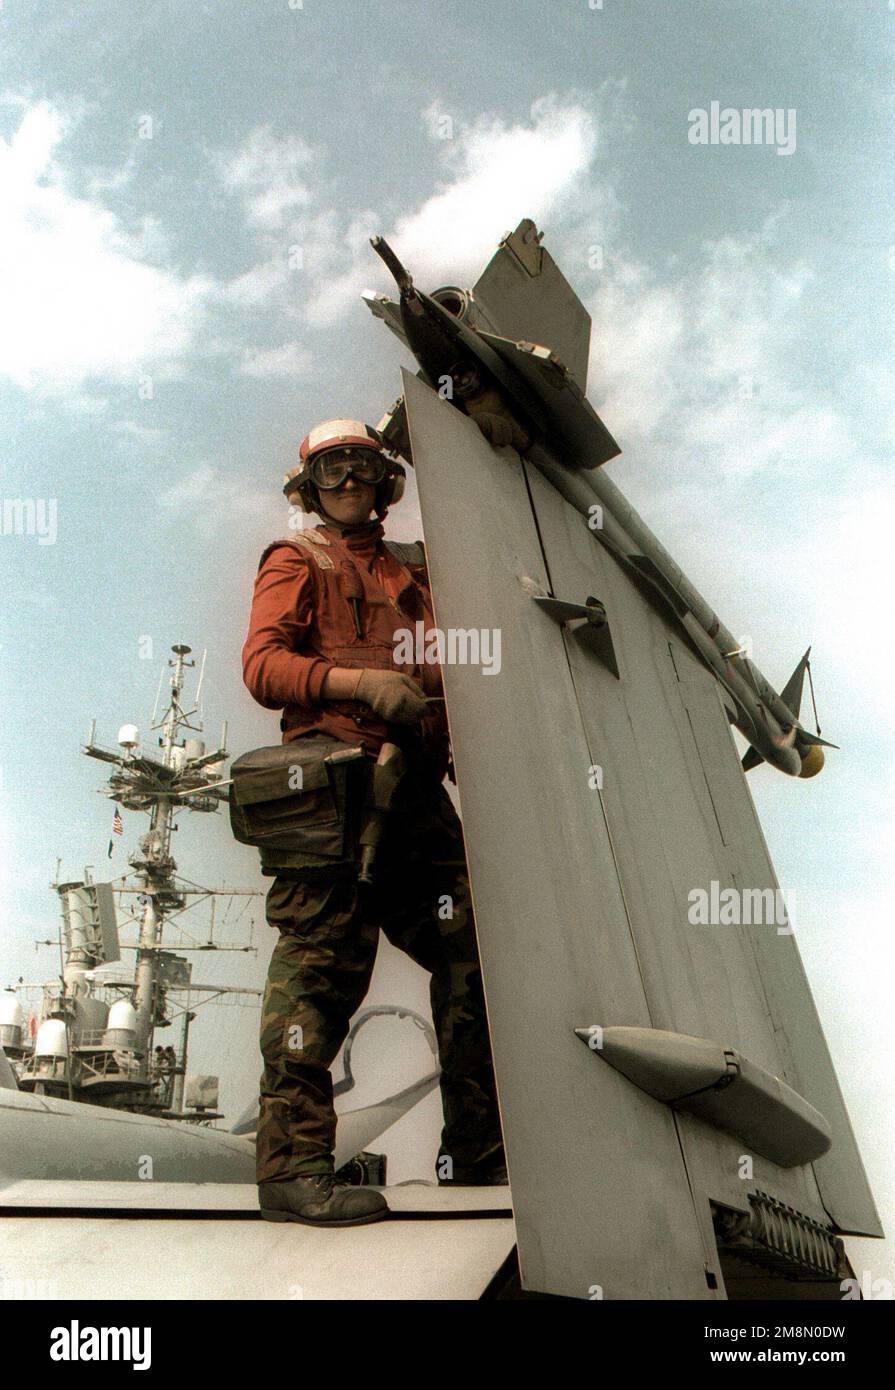 US Navy Aviation Ordnanceman AIRMAN Apprentice (AOAA) Michael Larson carica un serbatoio di azoto progettato per raffreddare la testa del cercatore di un AIM-9 Sidewinder corto raggio, IR (infrarosso) aria ad aria missile a bordo della portaerei convenzionale USS INDEPENDENCE (CV 62). L'INDIPENDENZA è schierata al golfo persiano in sostegno dell'operazione SOUTHERN WATCH, 10 February1998. Operazione/Serie oggetto: SOUTHERN WATCH base: USS Independence (CV 62) Foto Stock